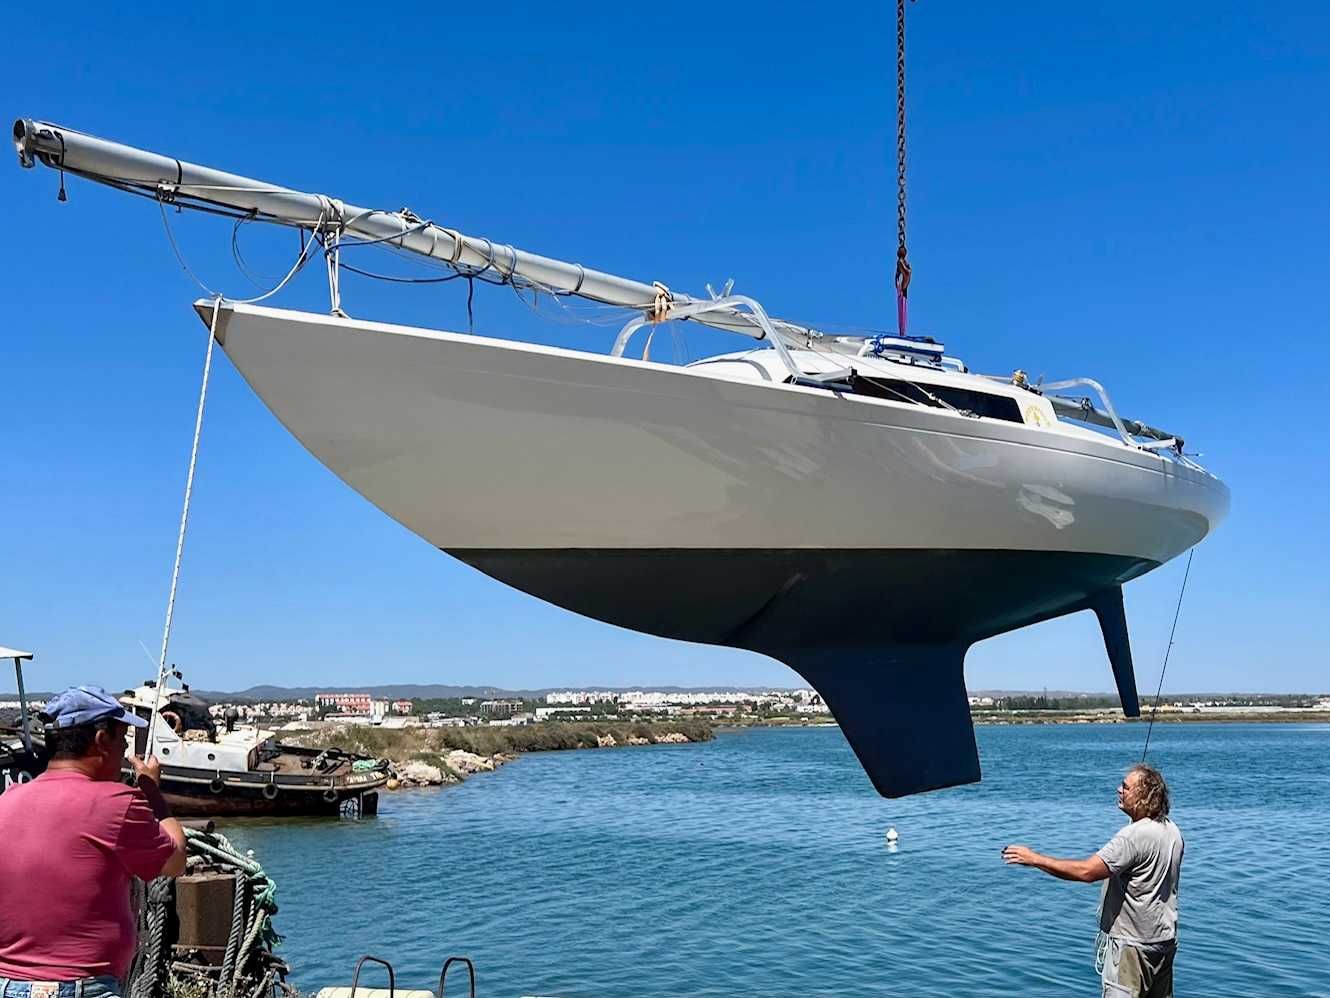 Barco a Vela - H-Boat - otimo para cruzeiros curtos e regattas,